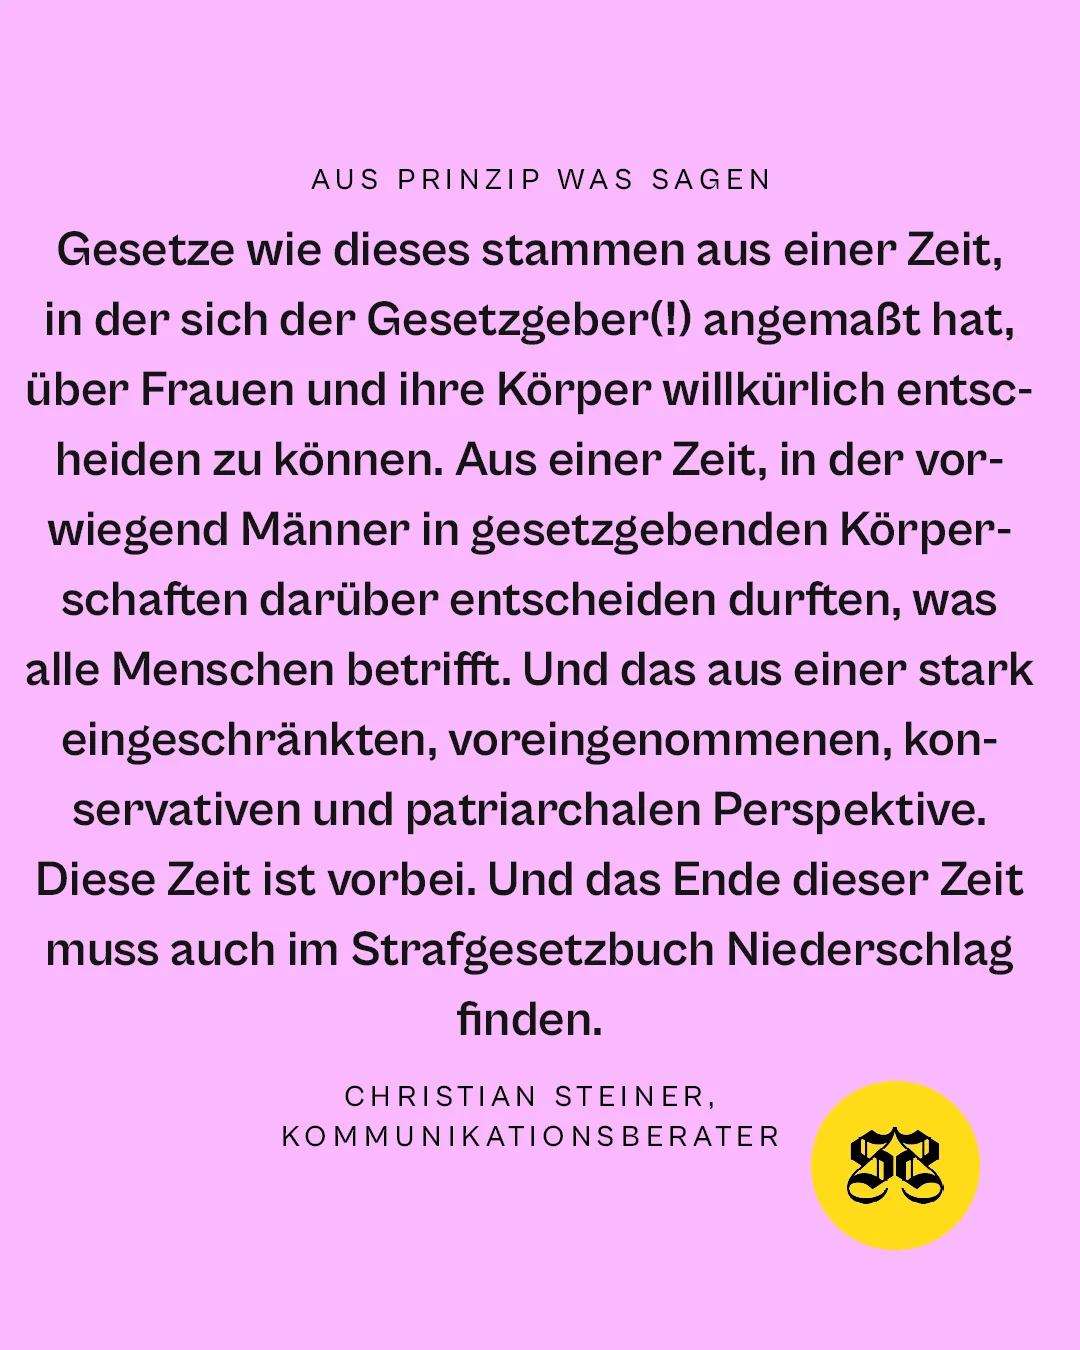 AP_Statements_Christian_Steiner2